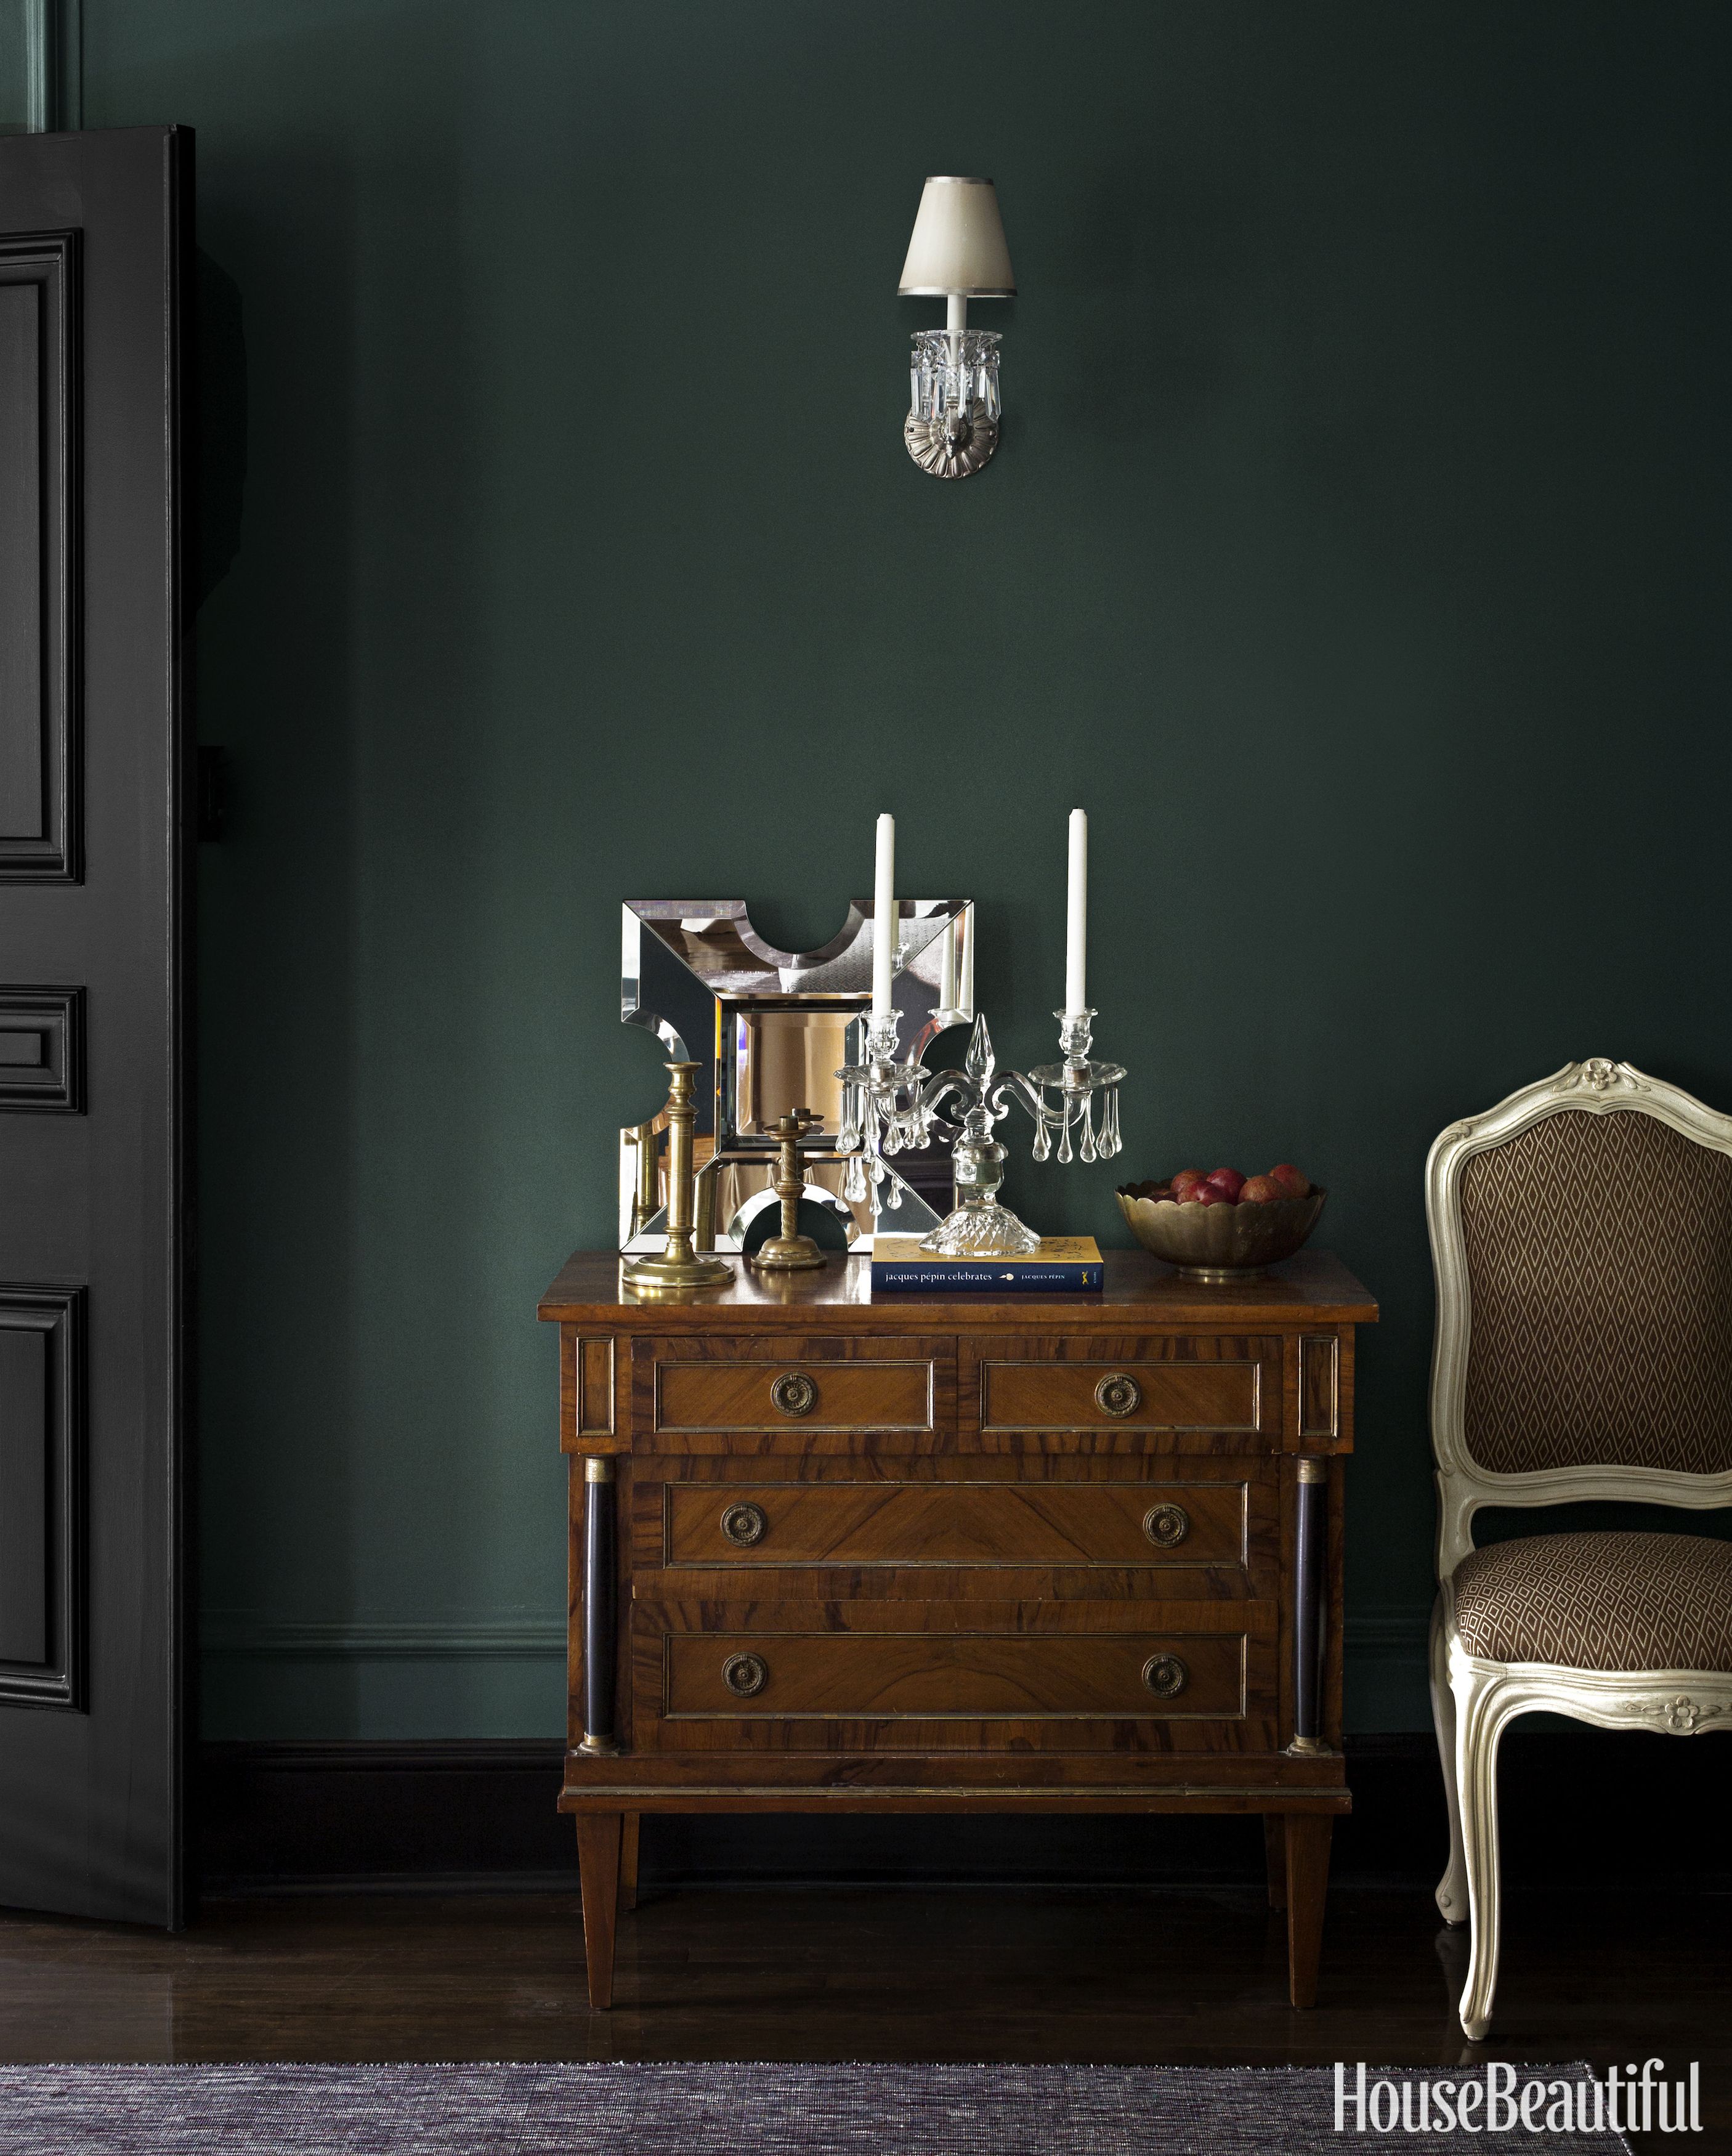 papel pintado verde oscuro para paredes,mueble,habitación,cajonera,mesa,cajón